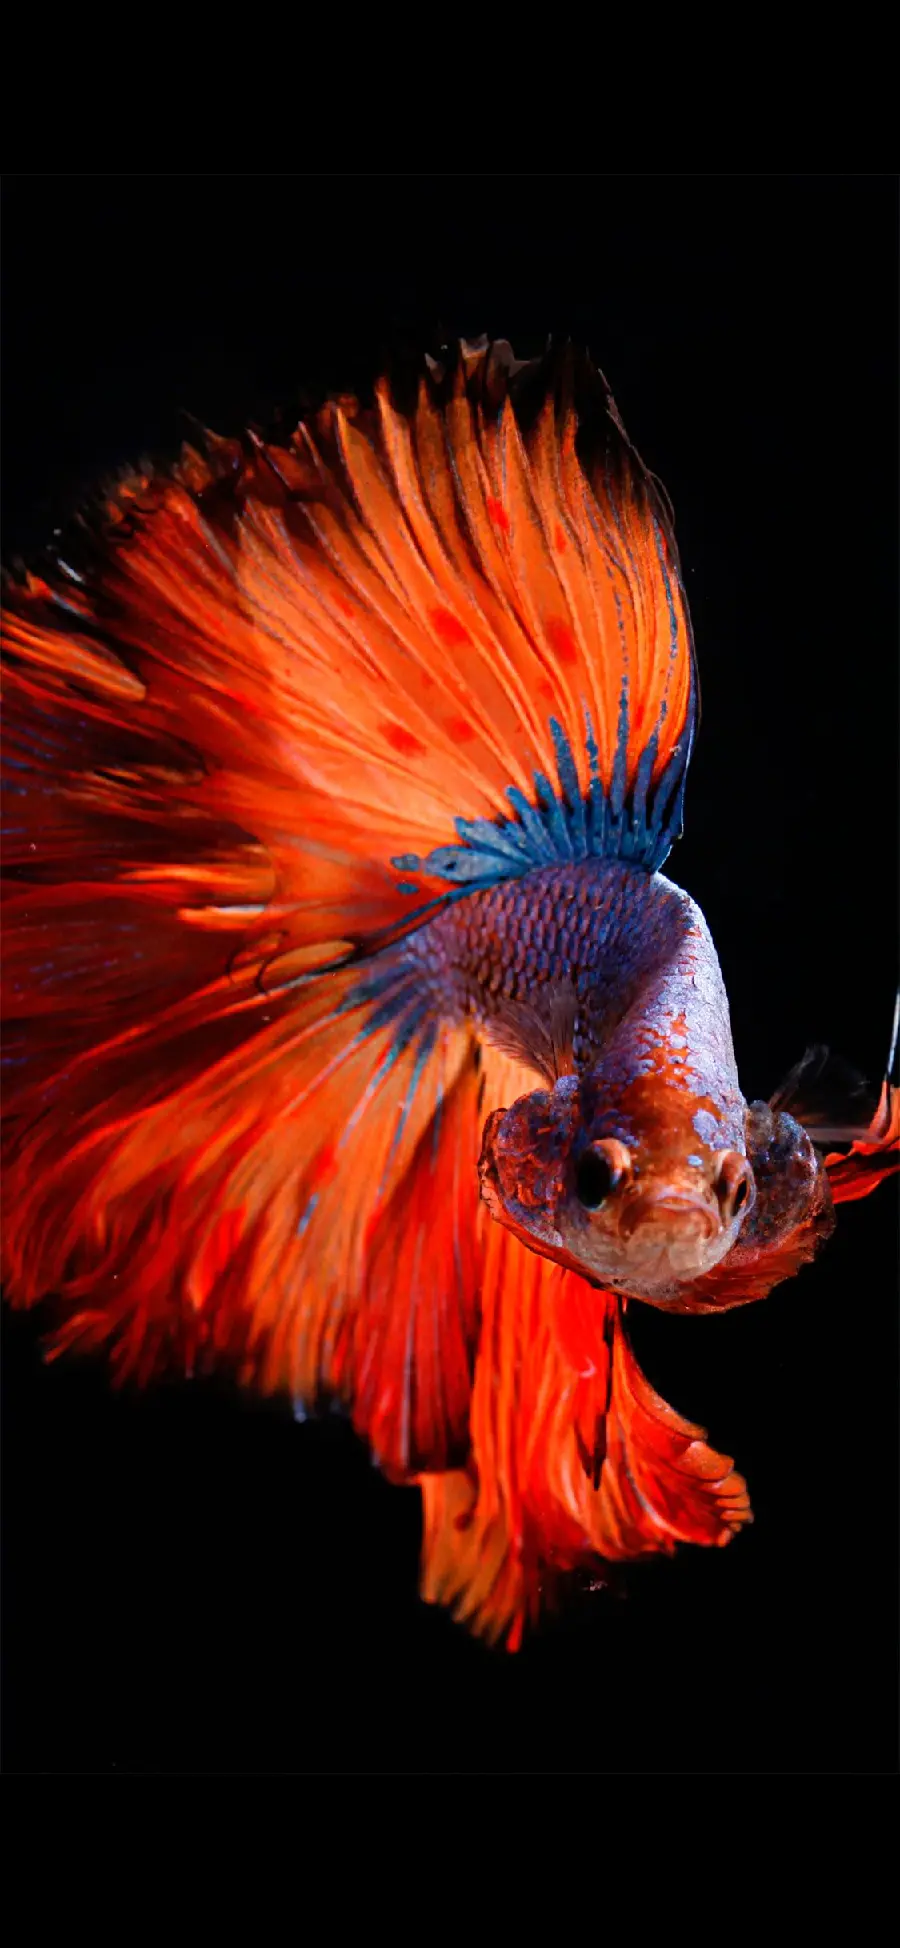 والپیپر ماهی با ظاهری زیبا و زینتی مخصوص گوشی آیفون